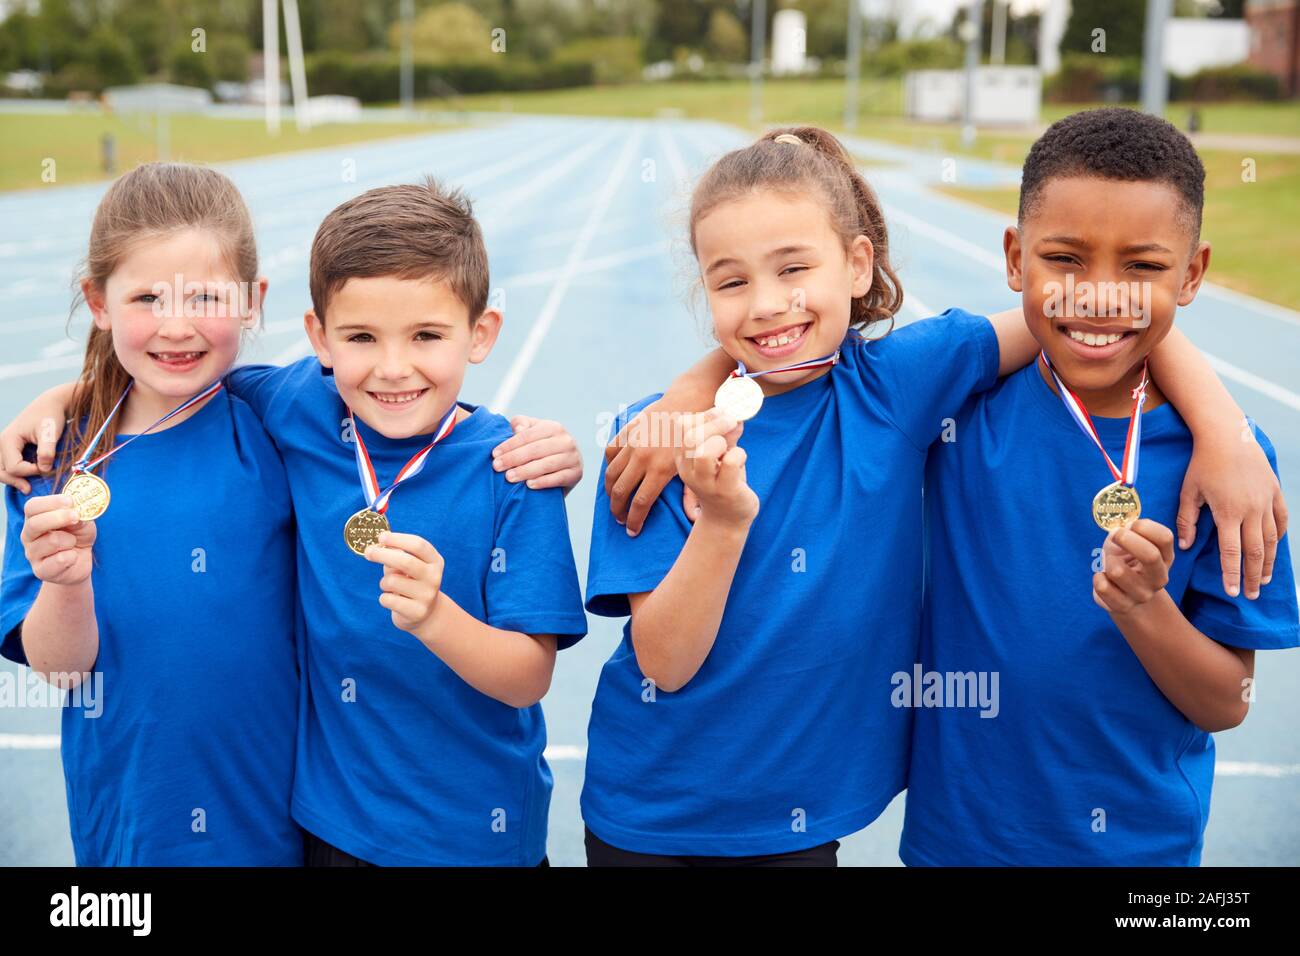 Portrait d'enfants montrant outre de gagnants de médailles sur la Journée des sports Banque D'Images